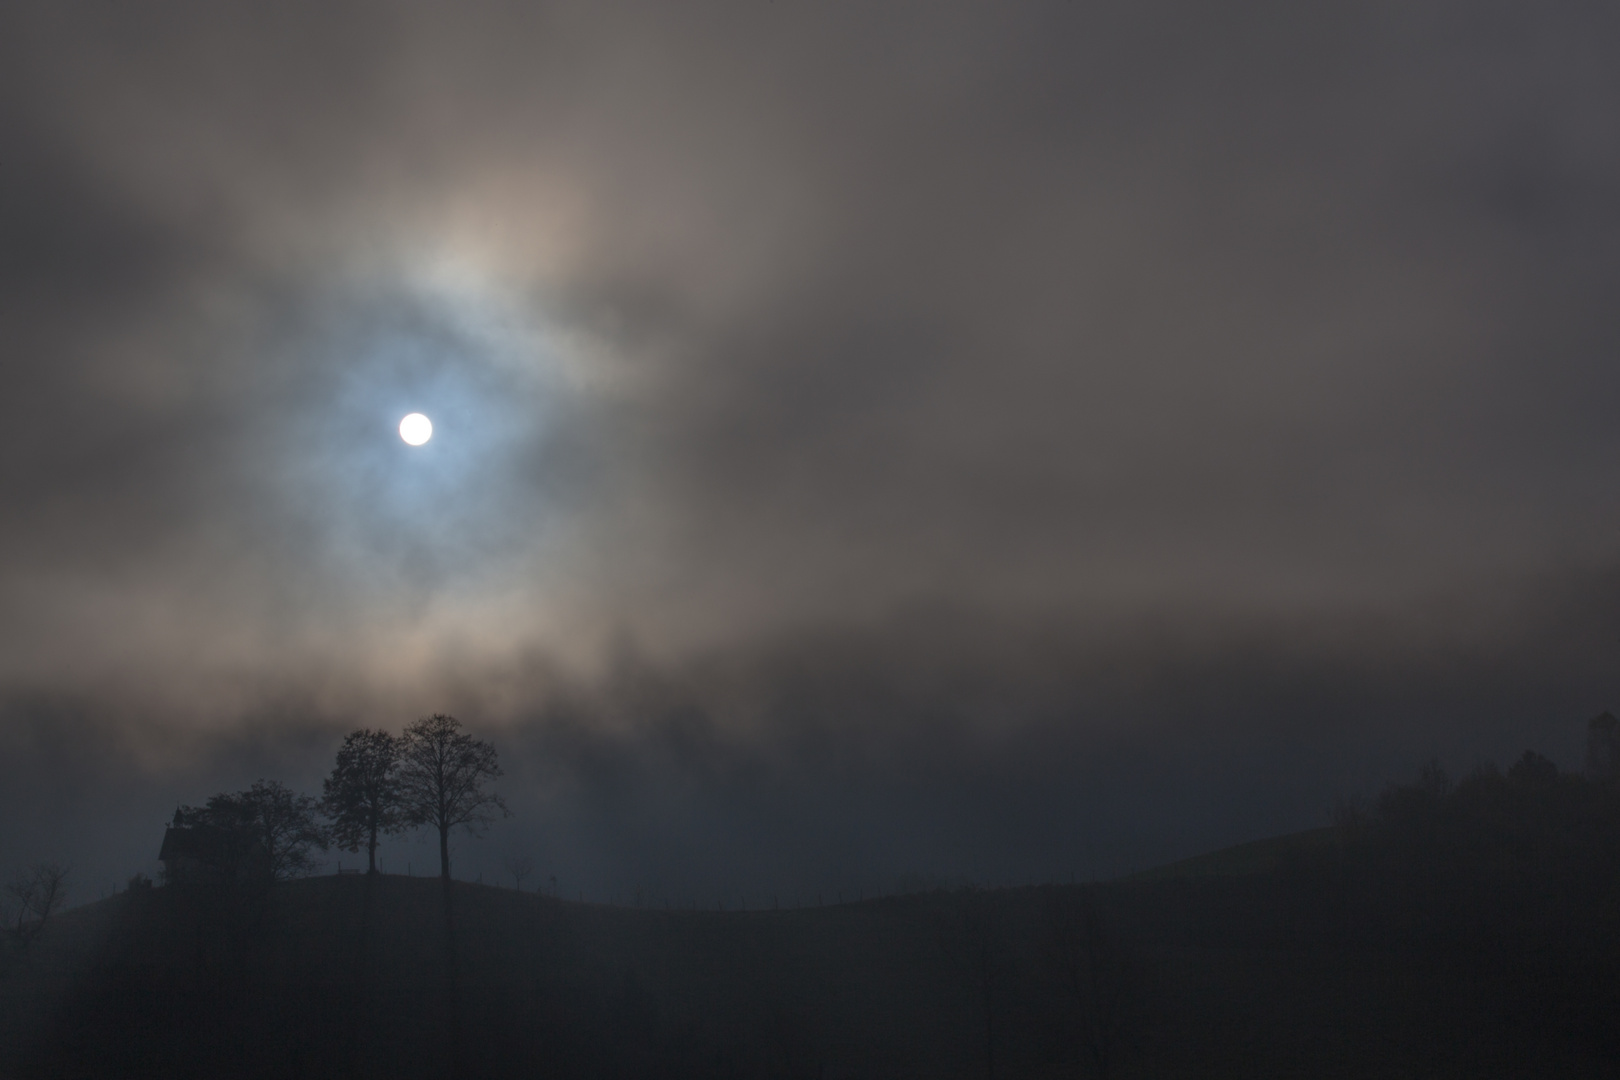 Nebel versus Sonne